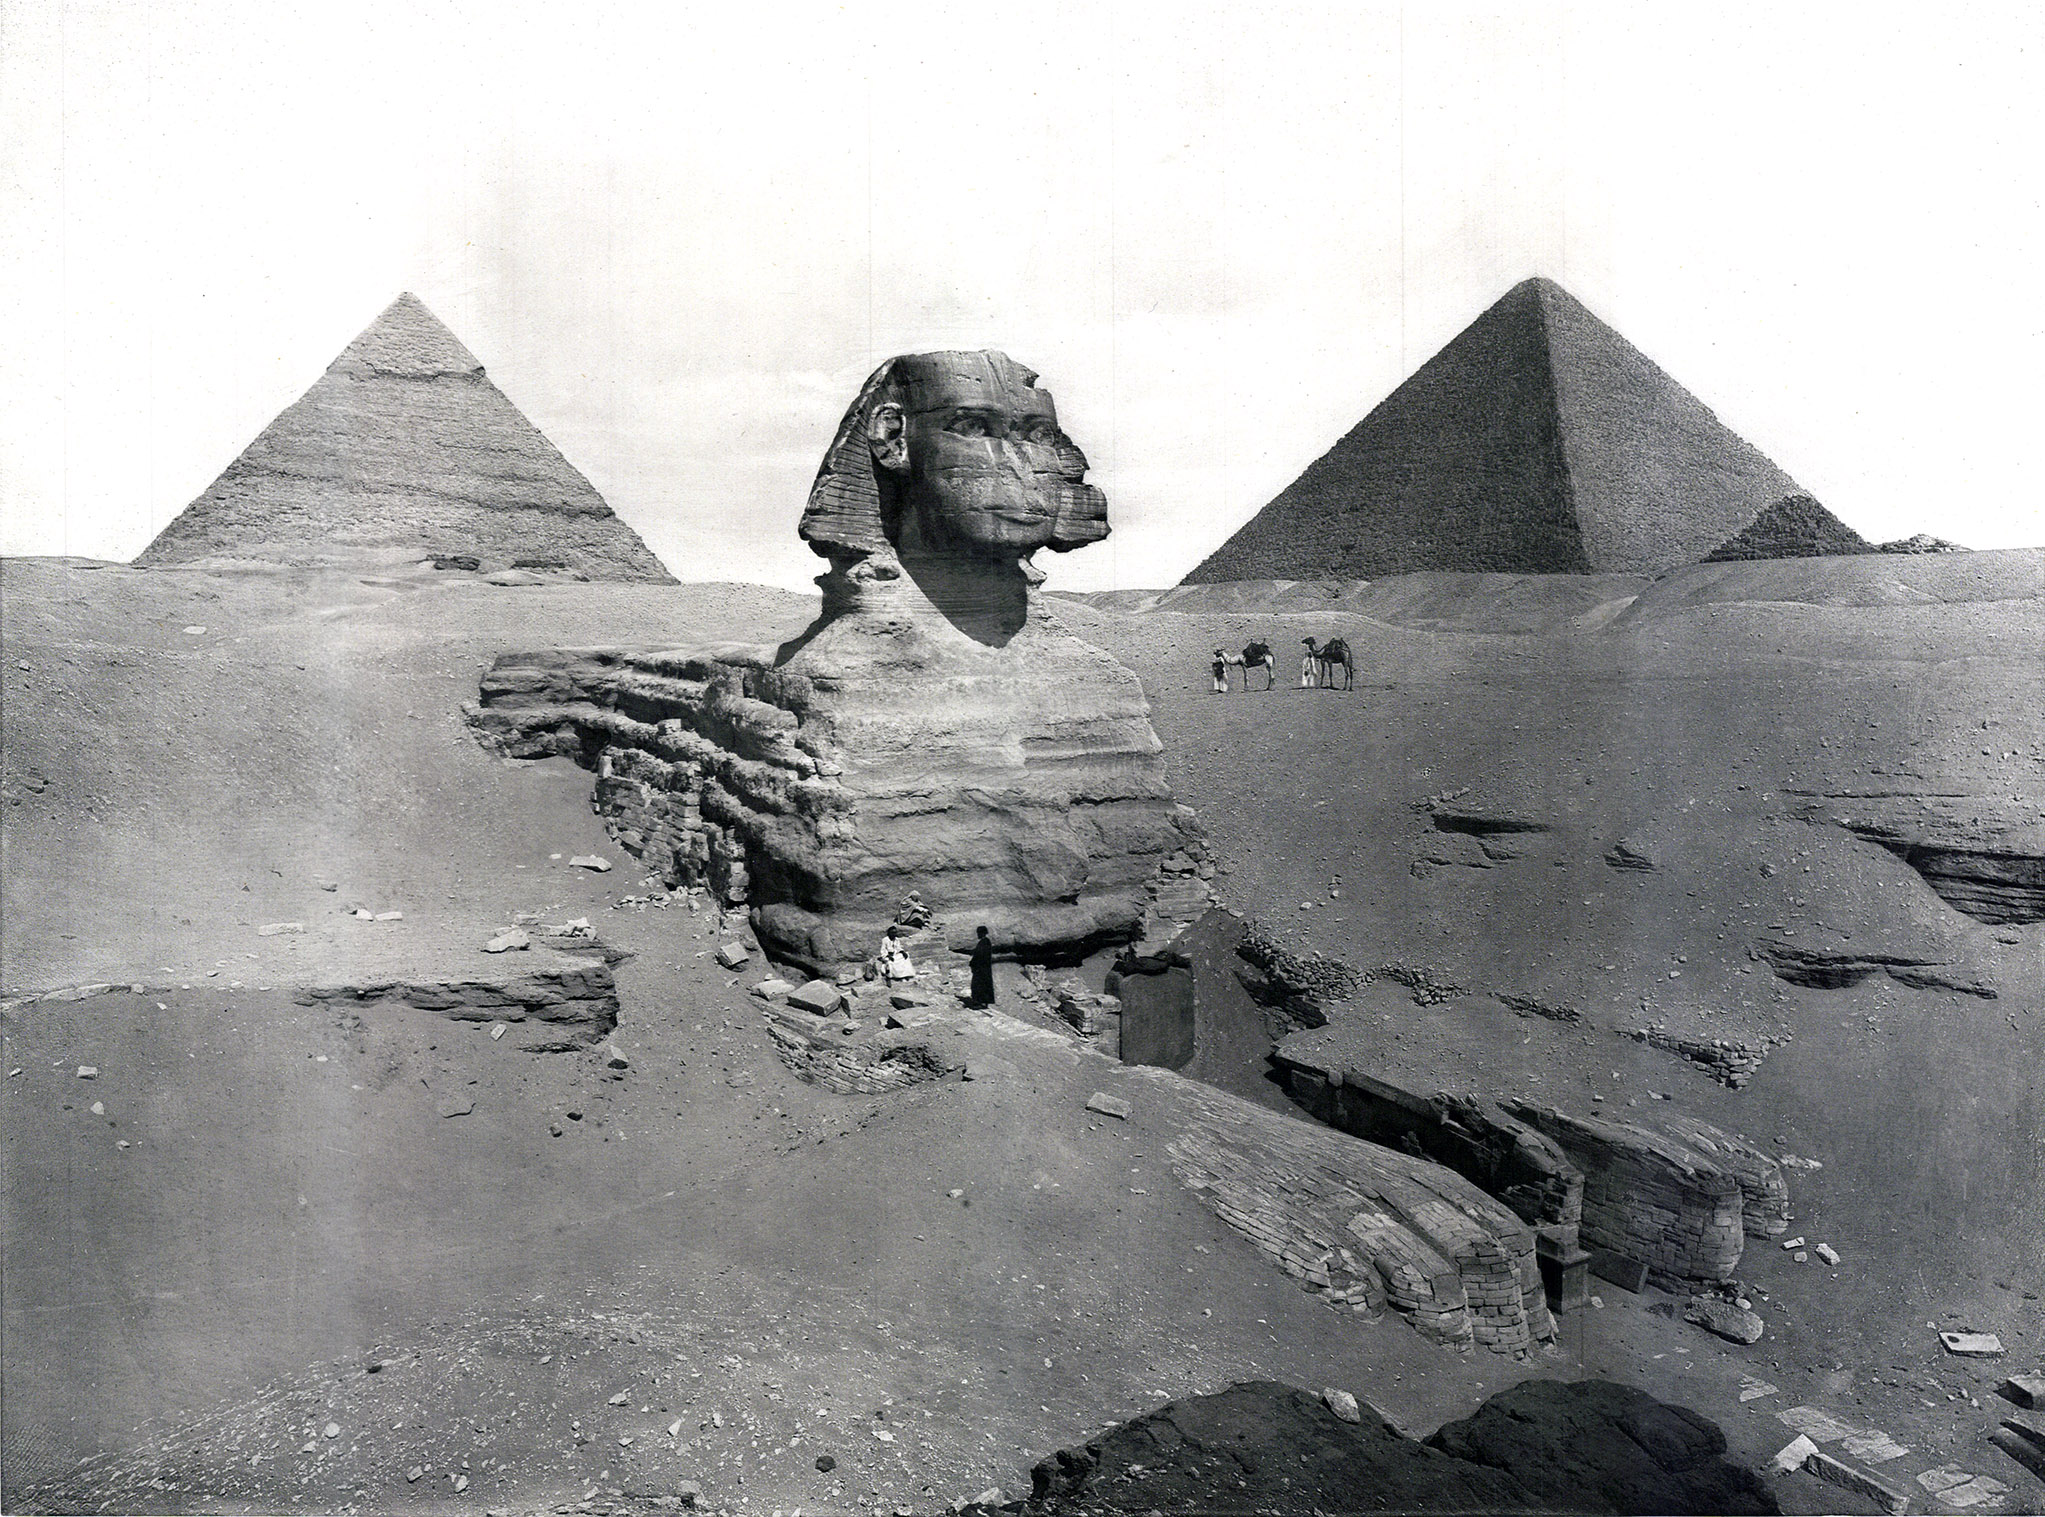 Sphinx von Gizeh (Pyramiden im Hintergrund)